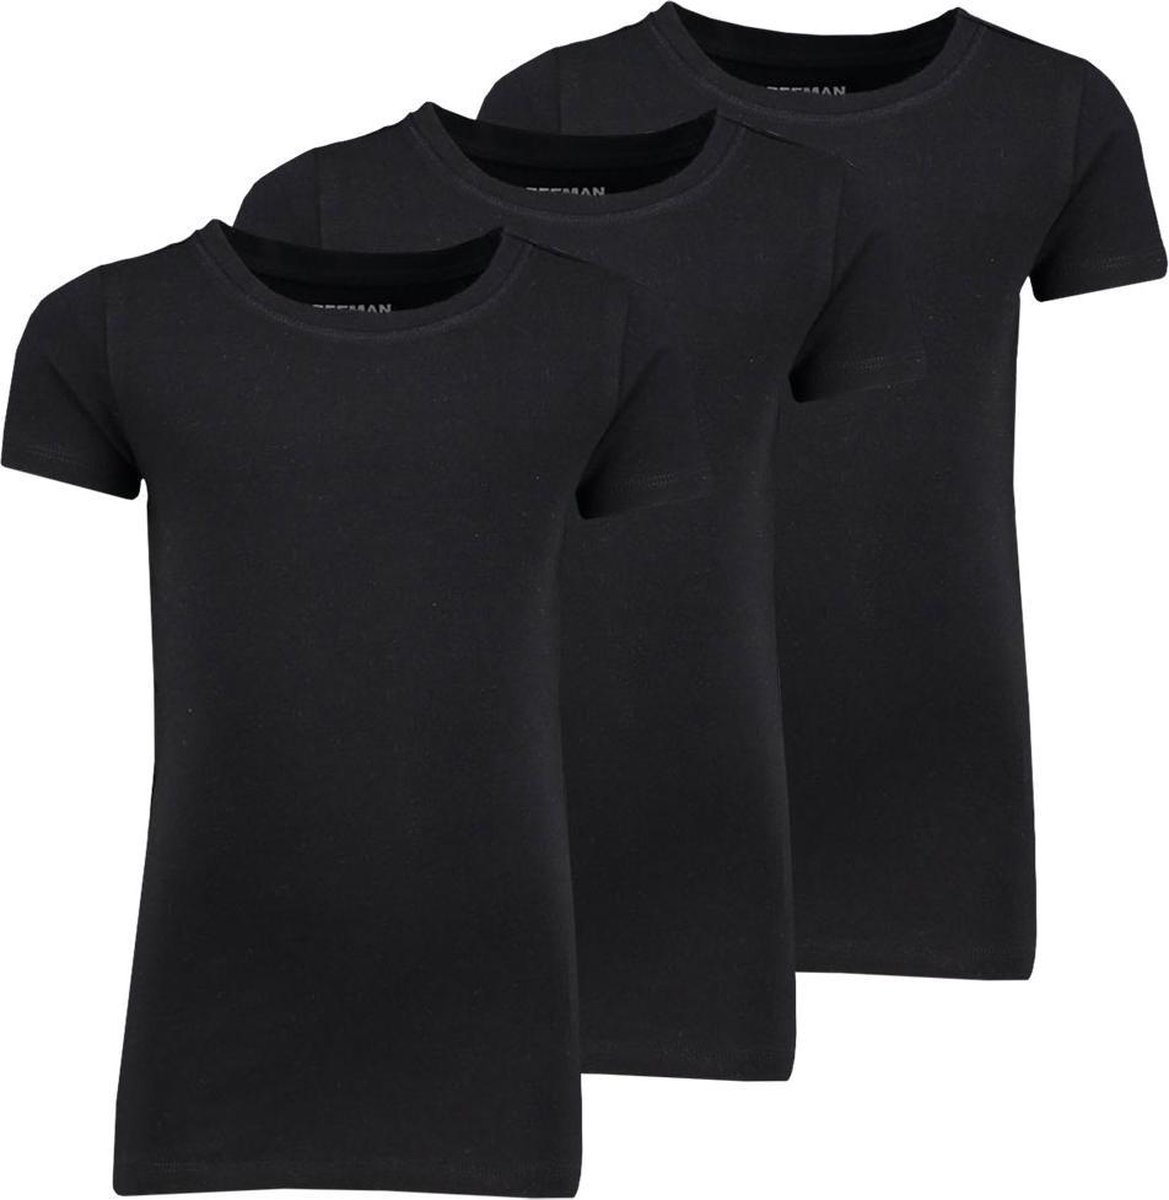 Zeeman kinder meisjes T-shirt korte mouw - zwart - maat 98/104 - 3 stuks